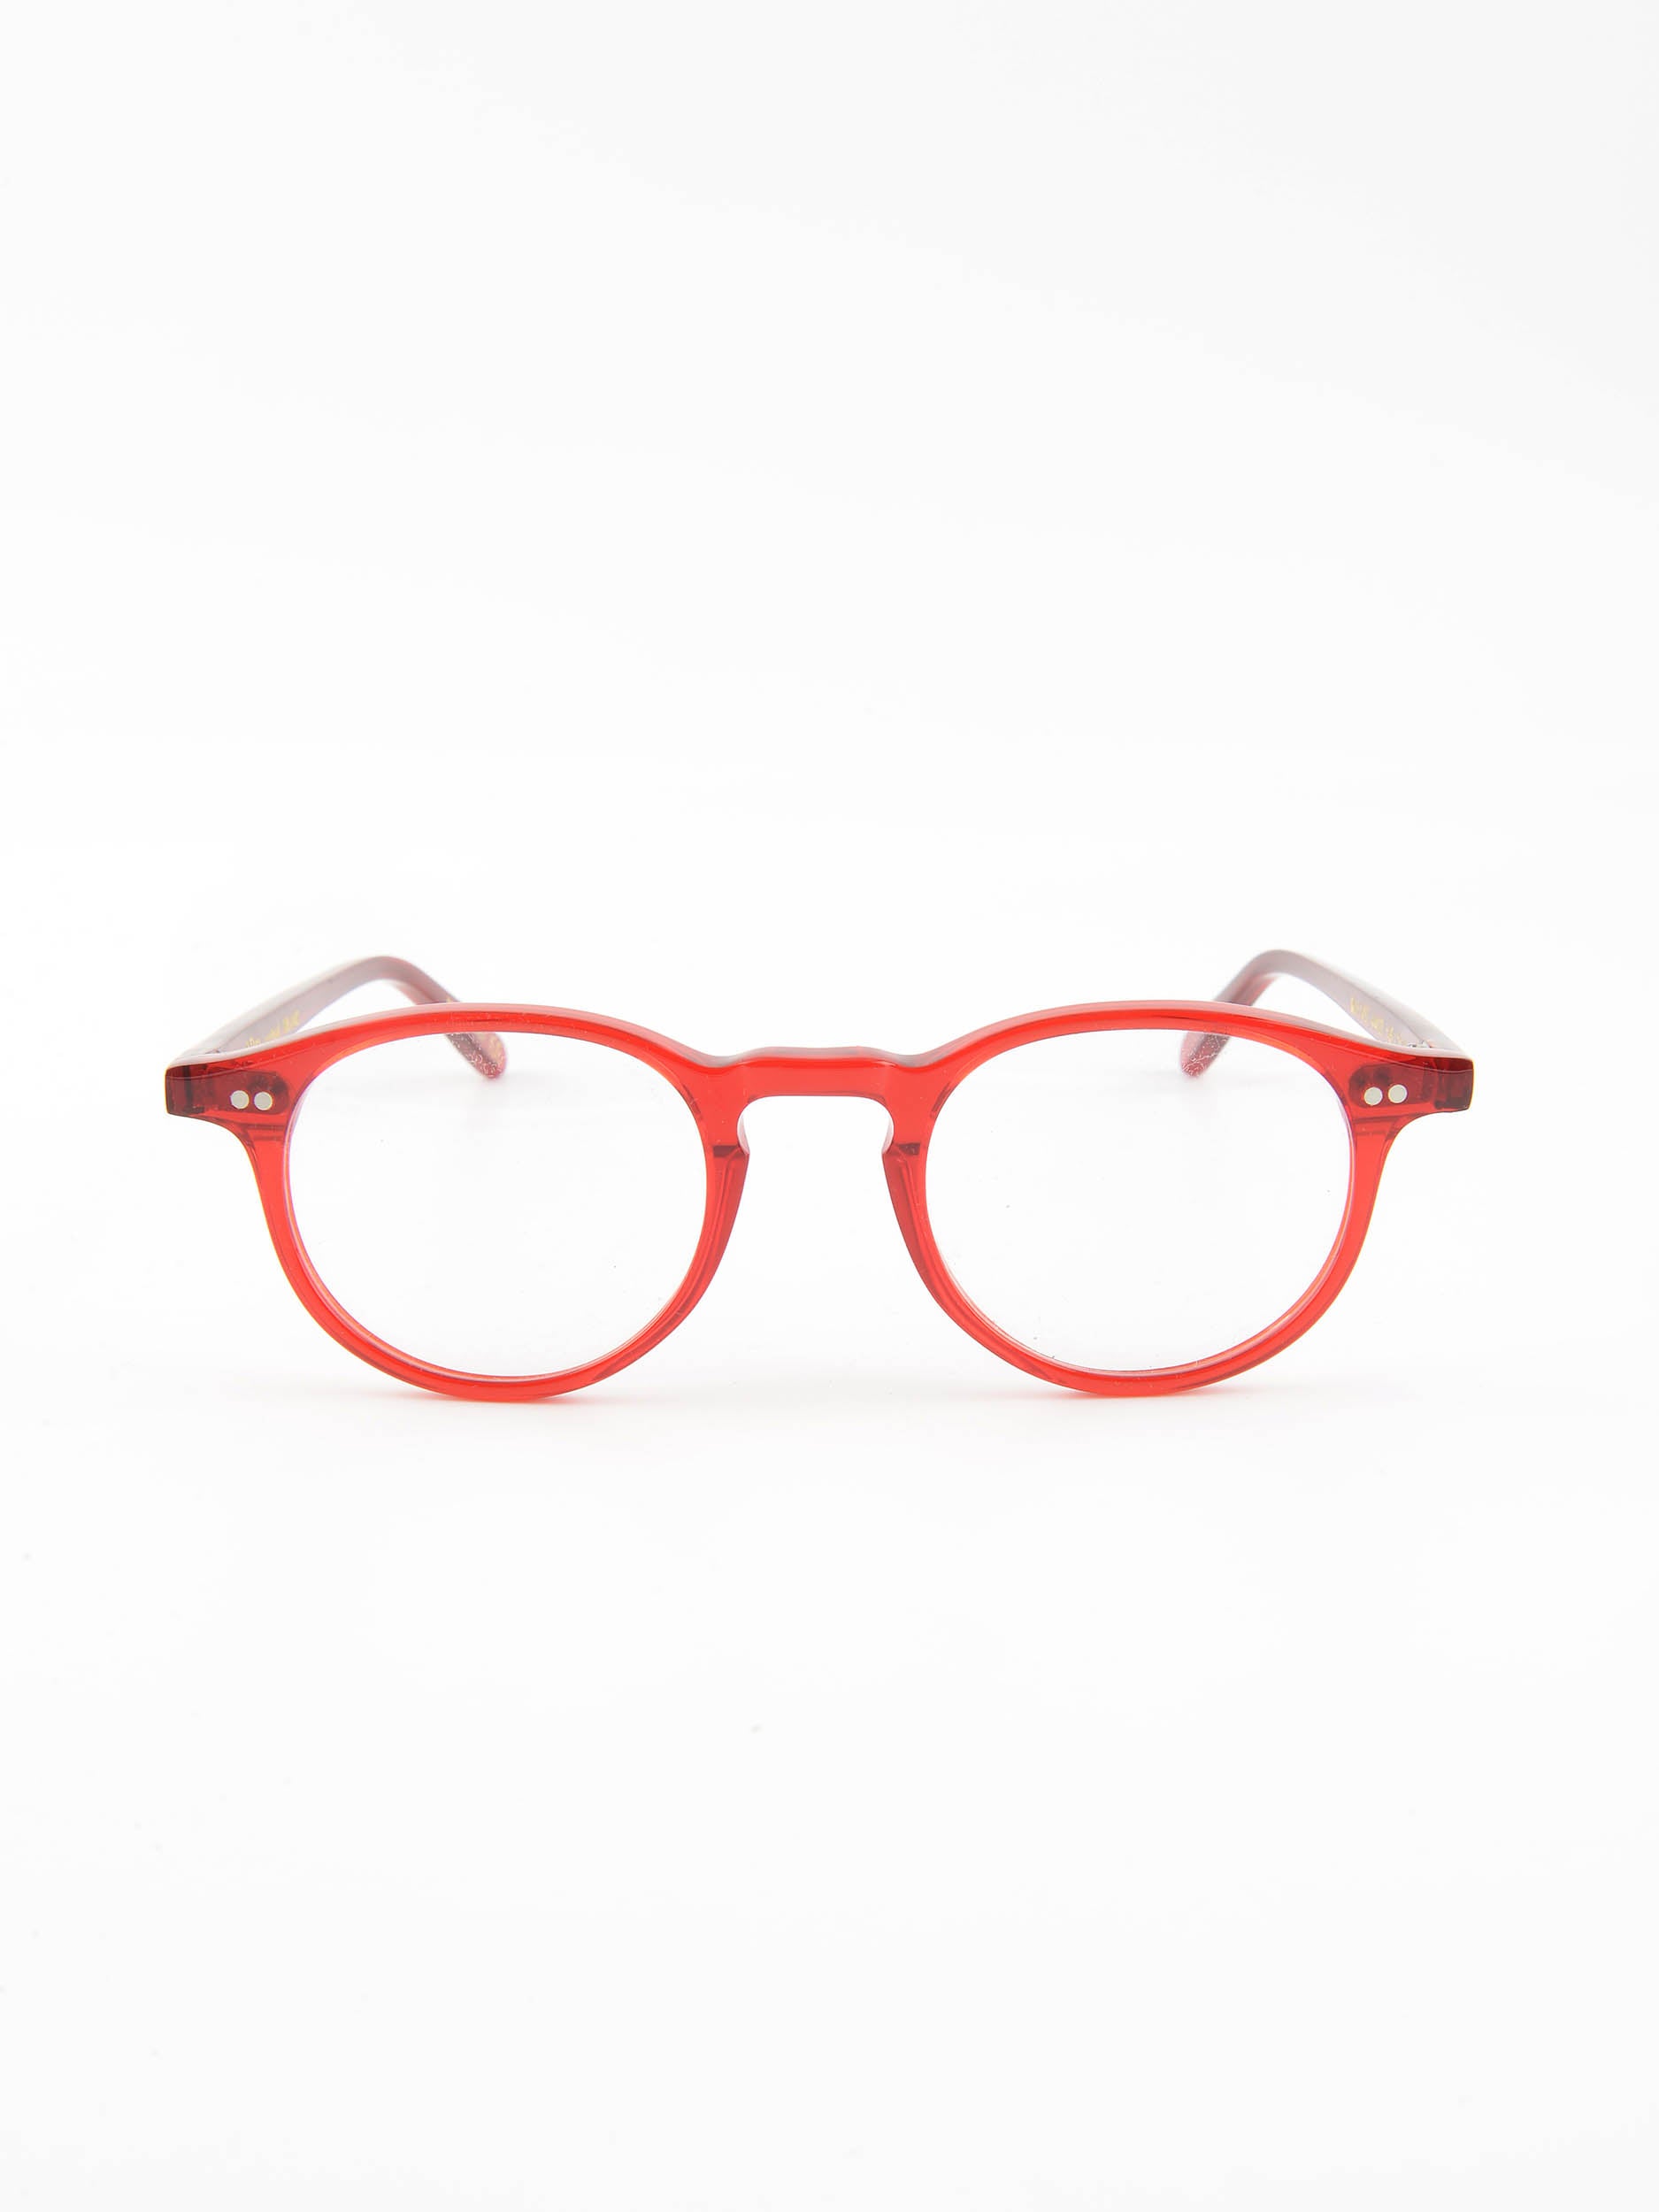 mod. 1453, rosso, Van&Bro, occhiale da Vista